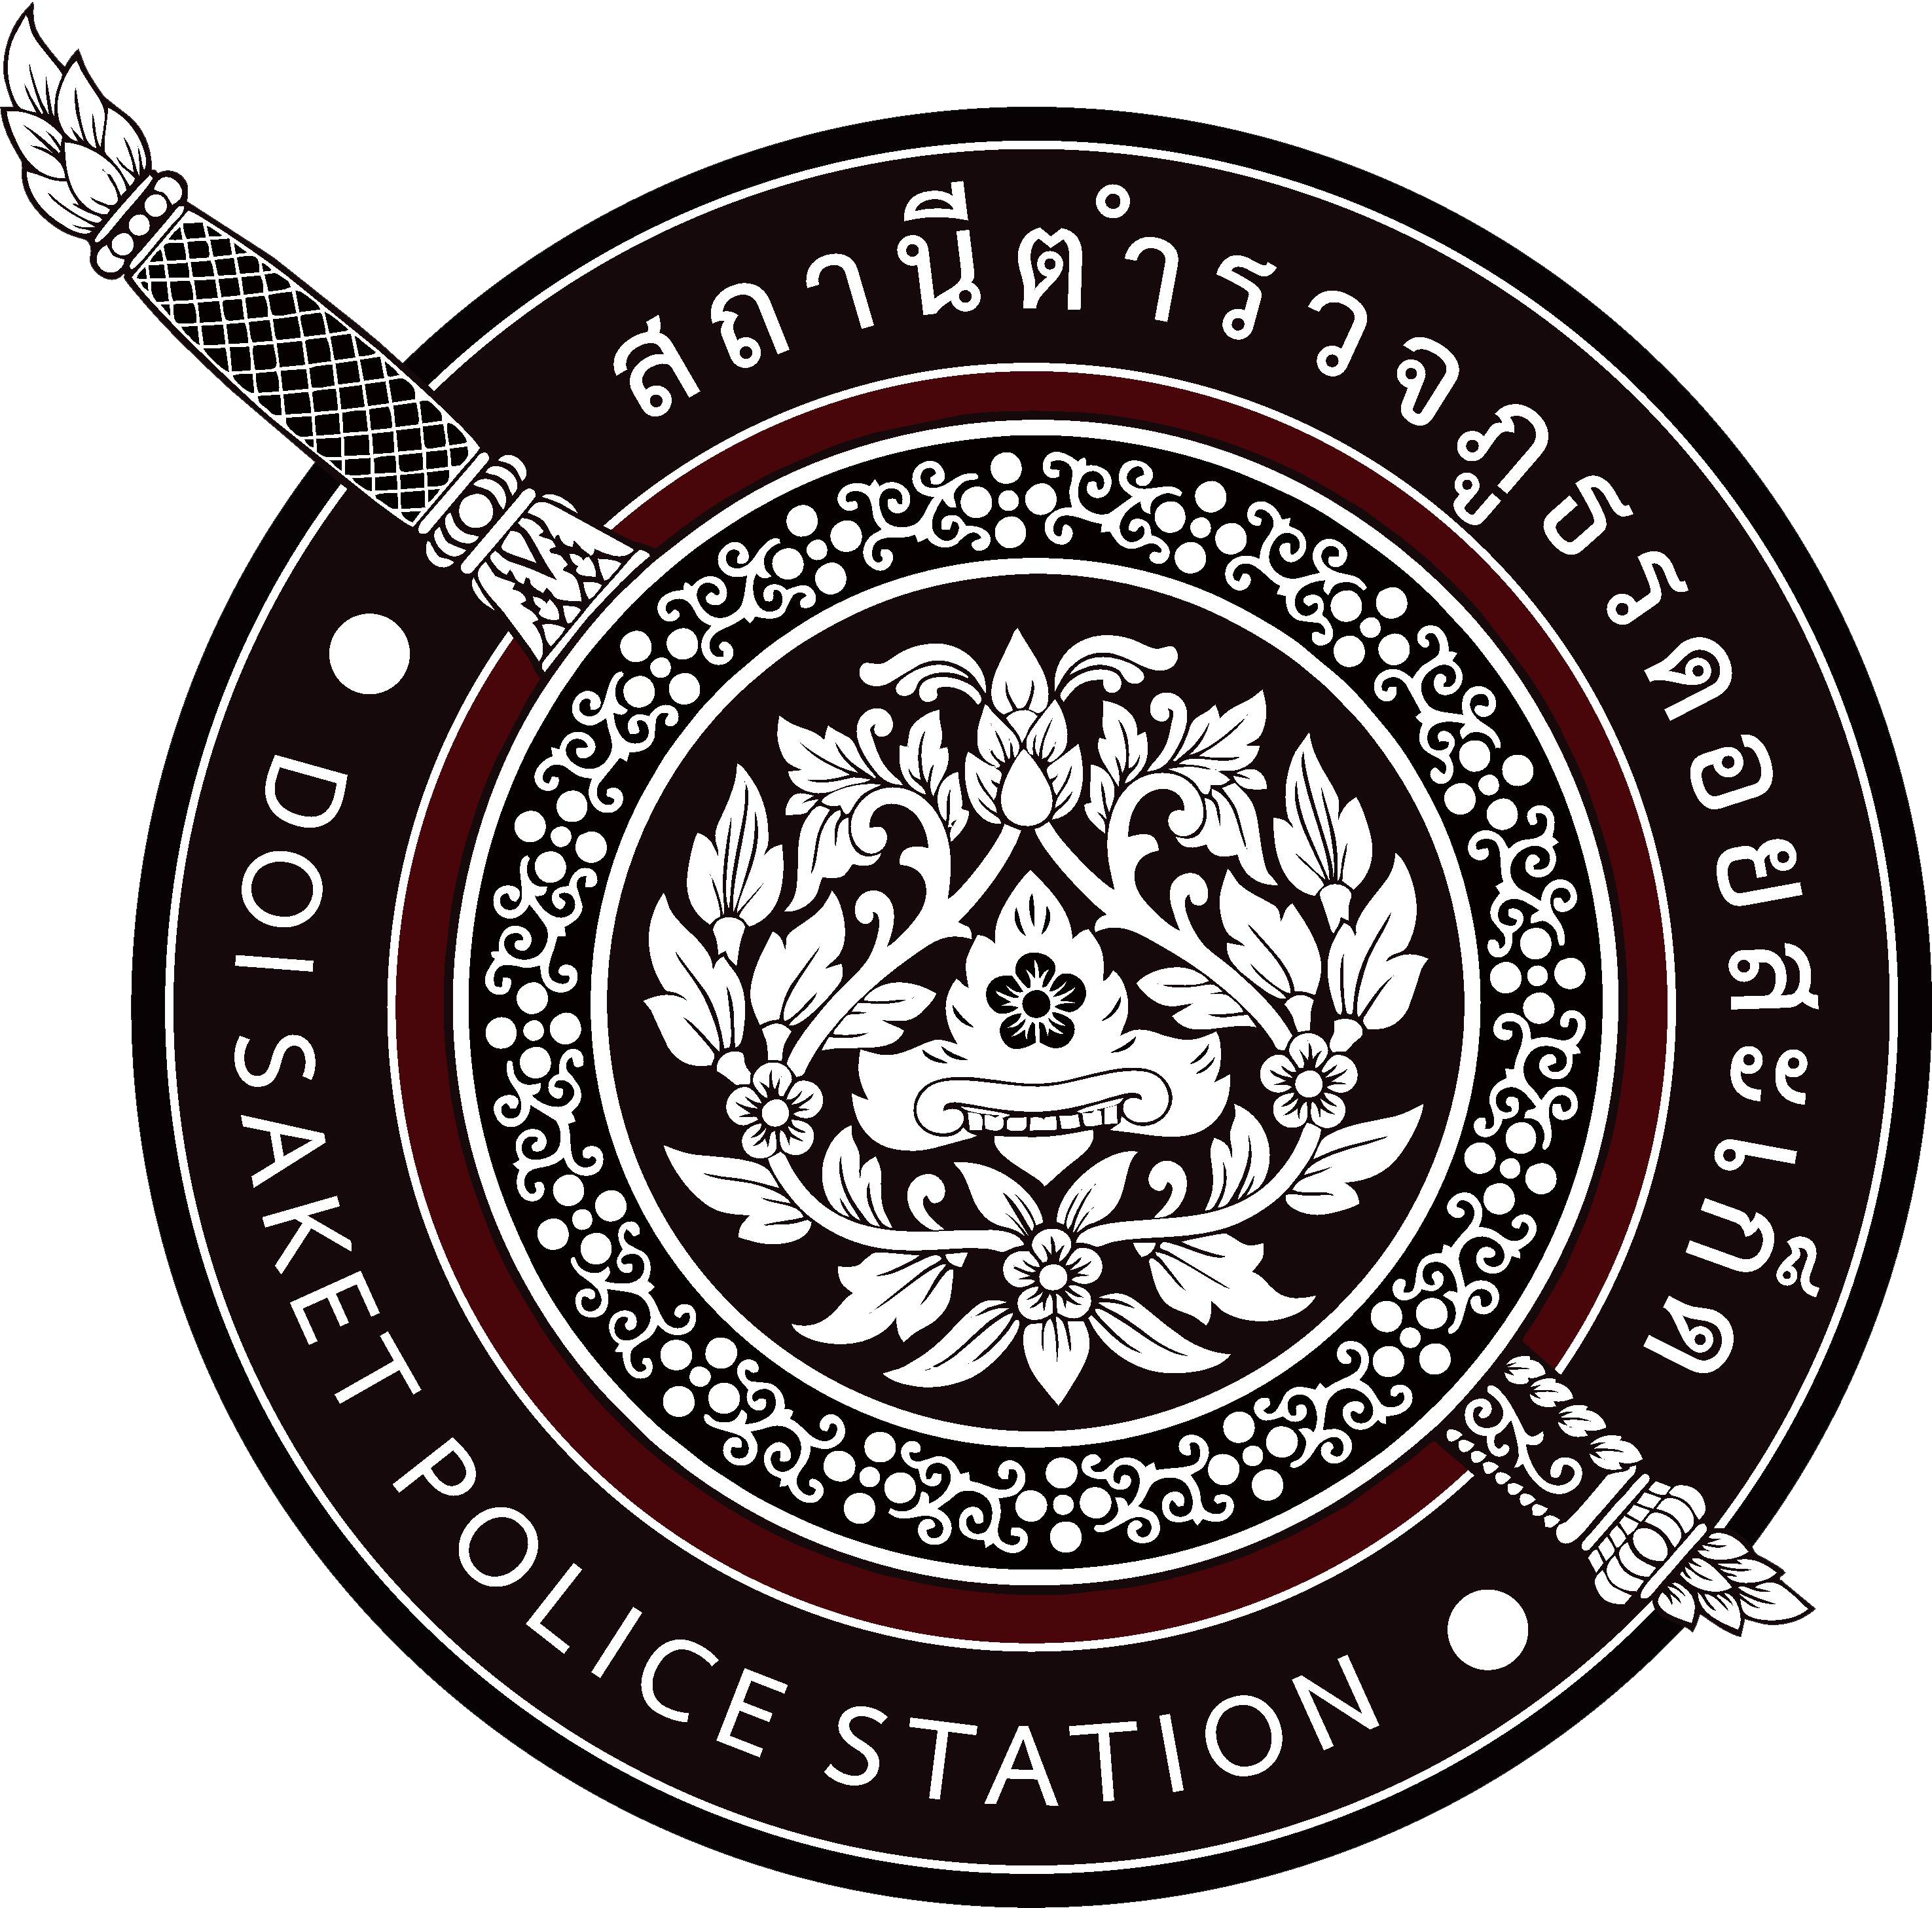 สถานีตำรวจภูธรดอยสะเก็ด จังหวัดเชียงใหม่ logo